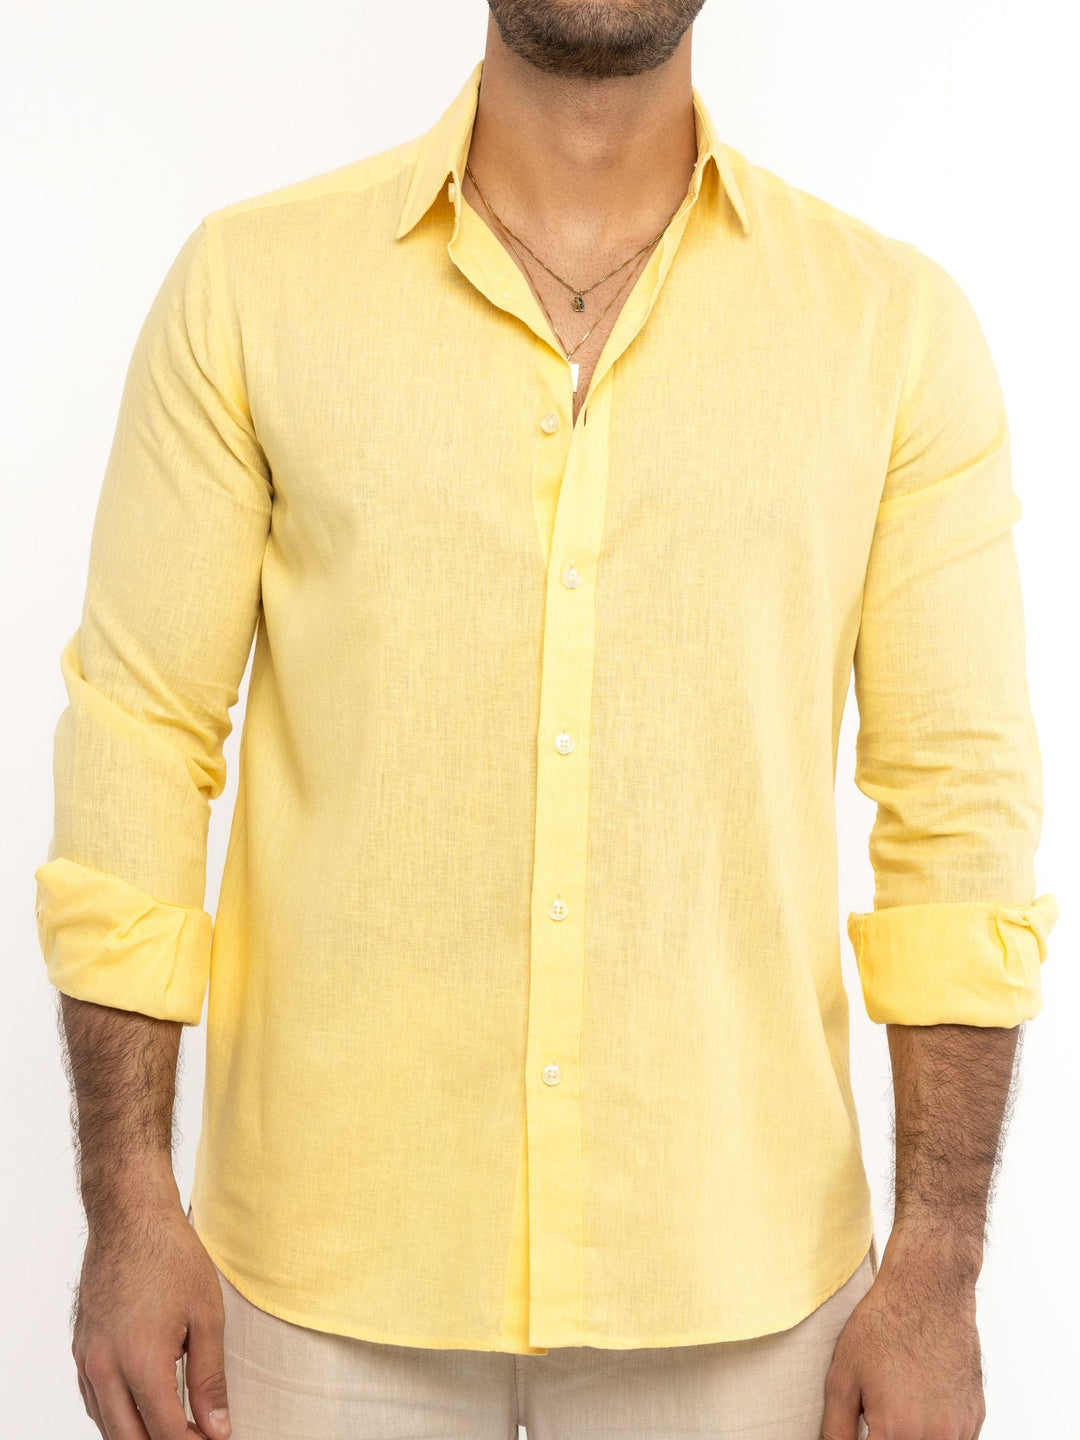 Zhivago Men Men Linen Shirt Yellow Linen Shirt